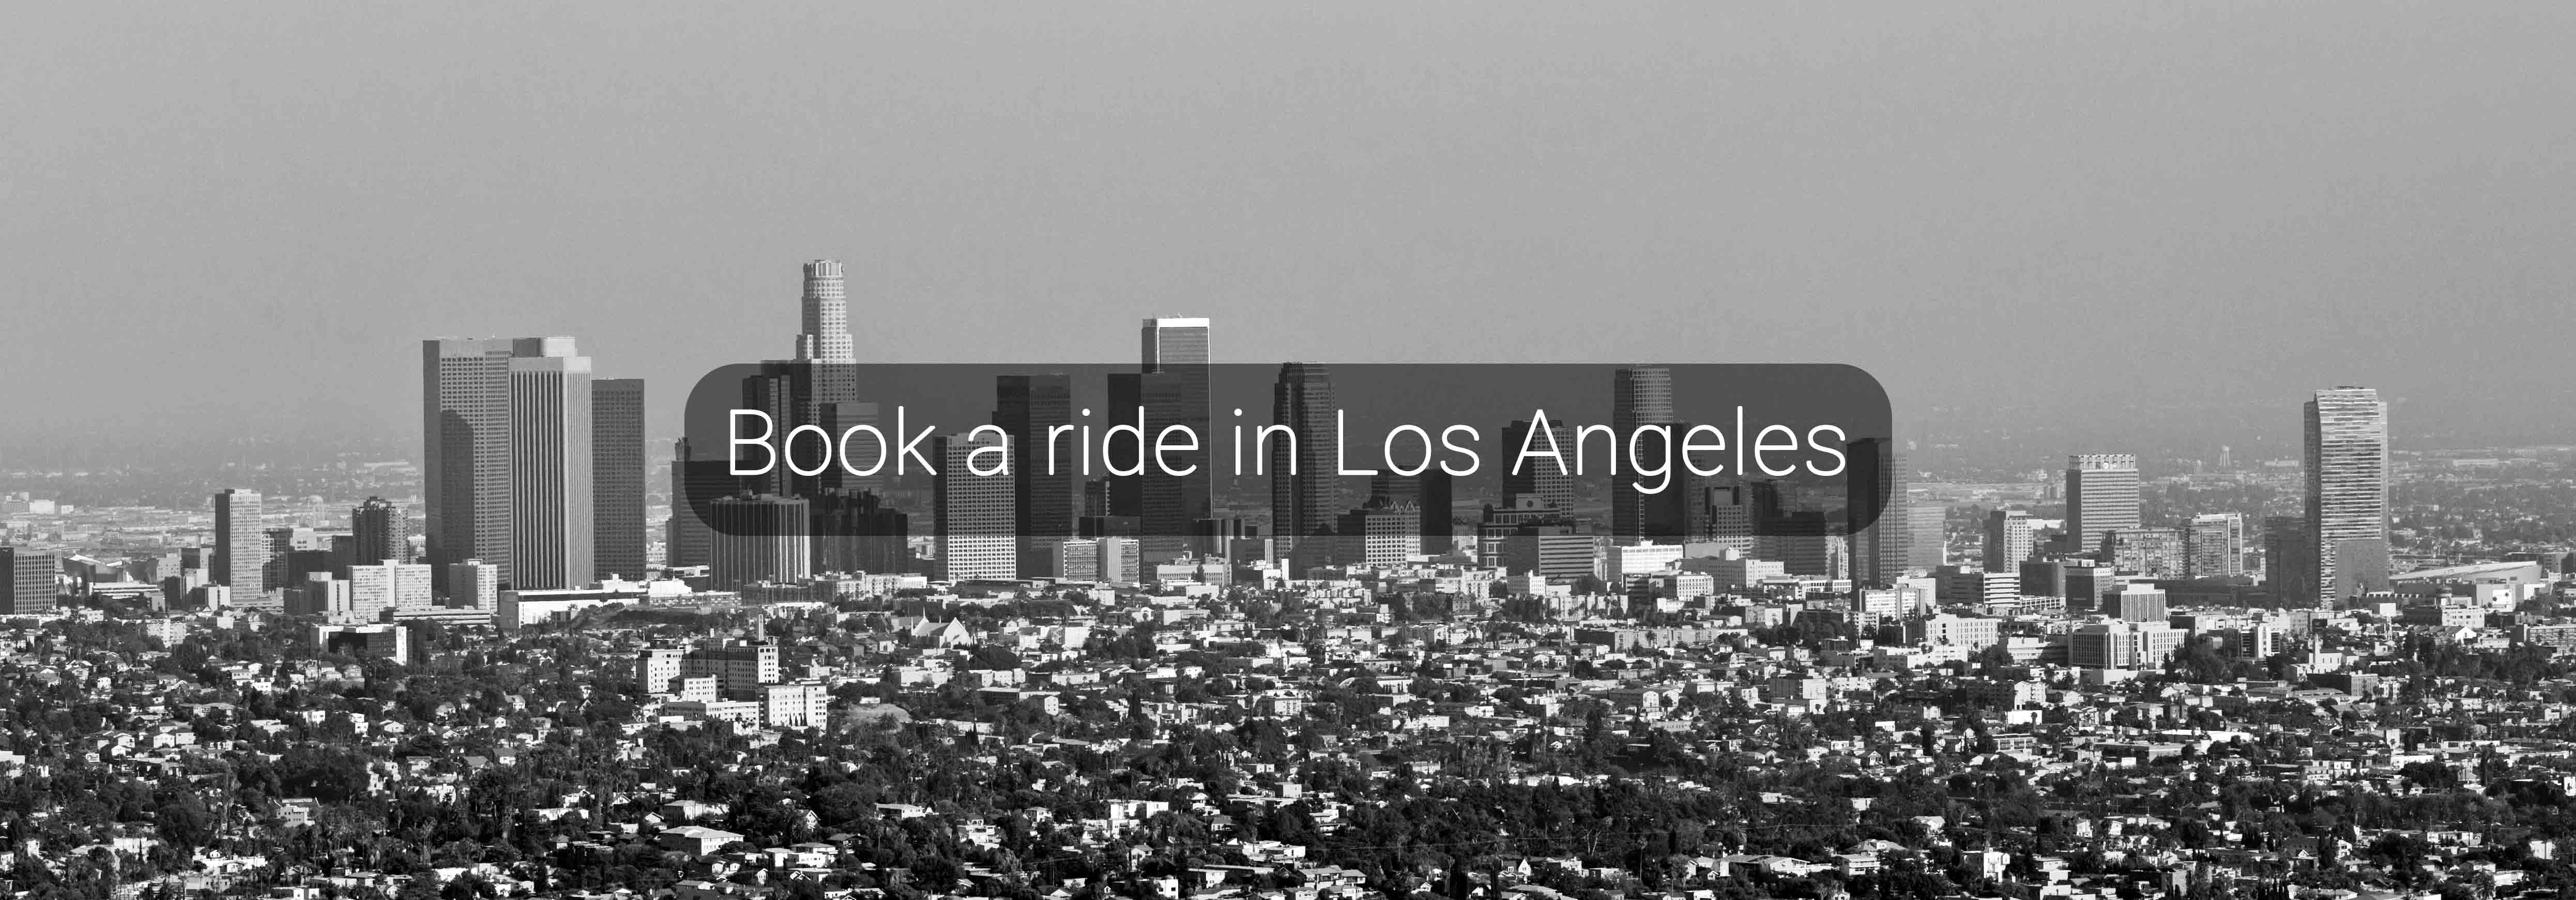 Book a ride in Los Angeles